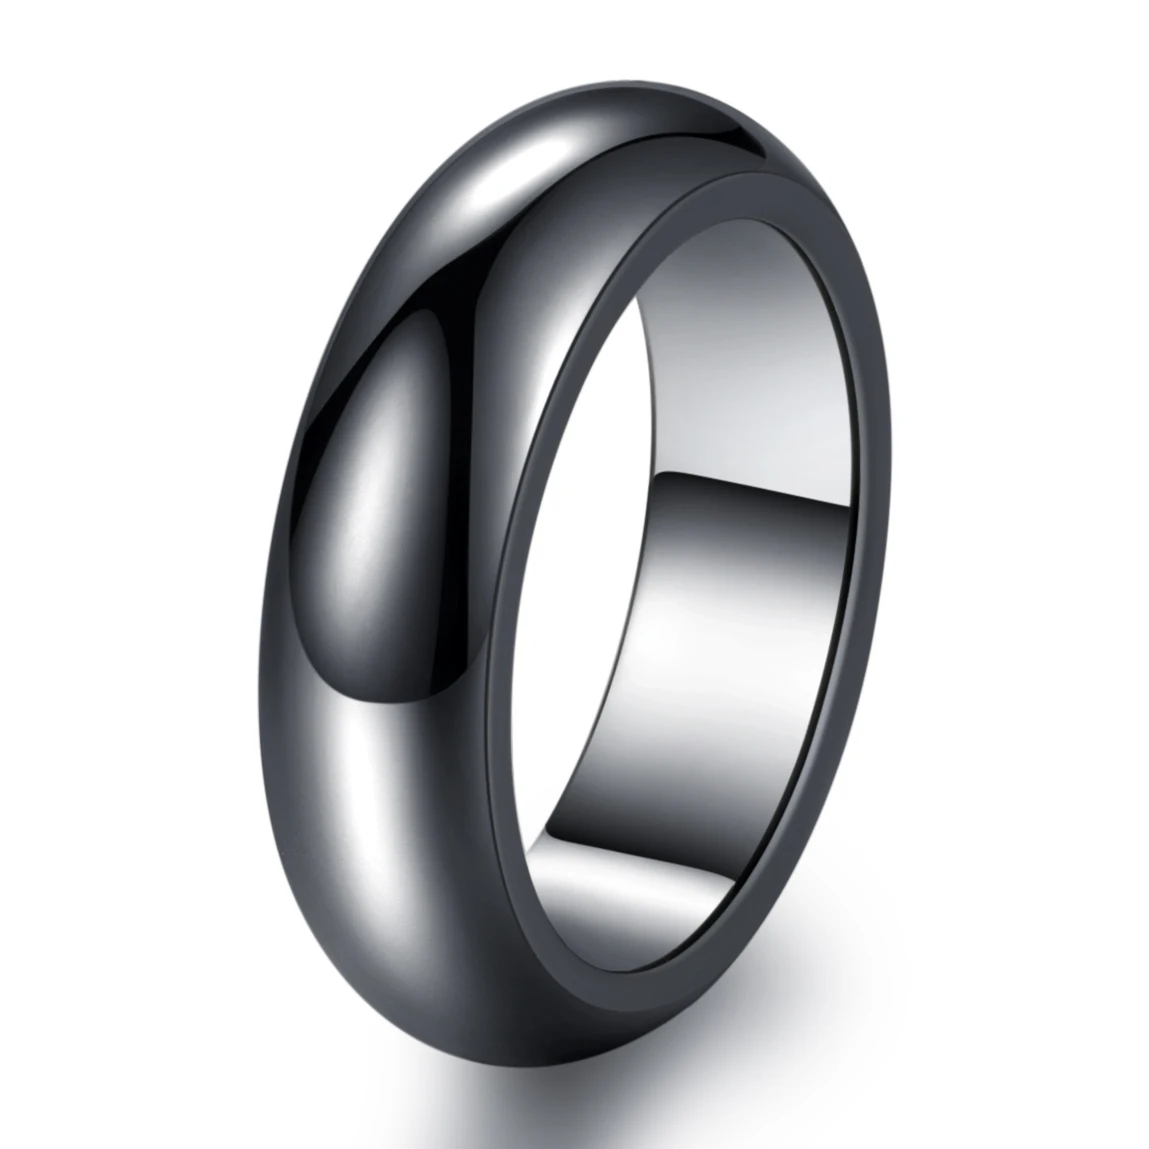  Гематитовое кольцо для женщин и мужчин немагнитное/магнитное из натурального камня высококачественное черное ювелирное изделие подарок